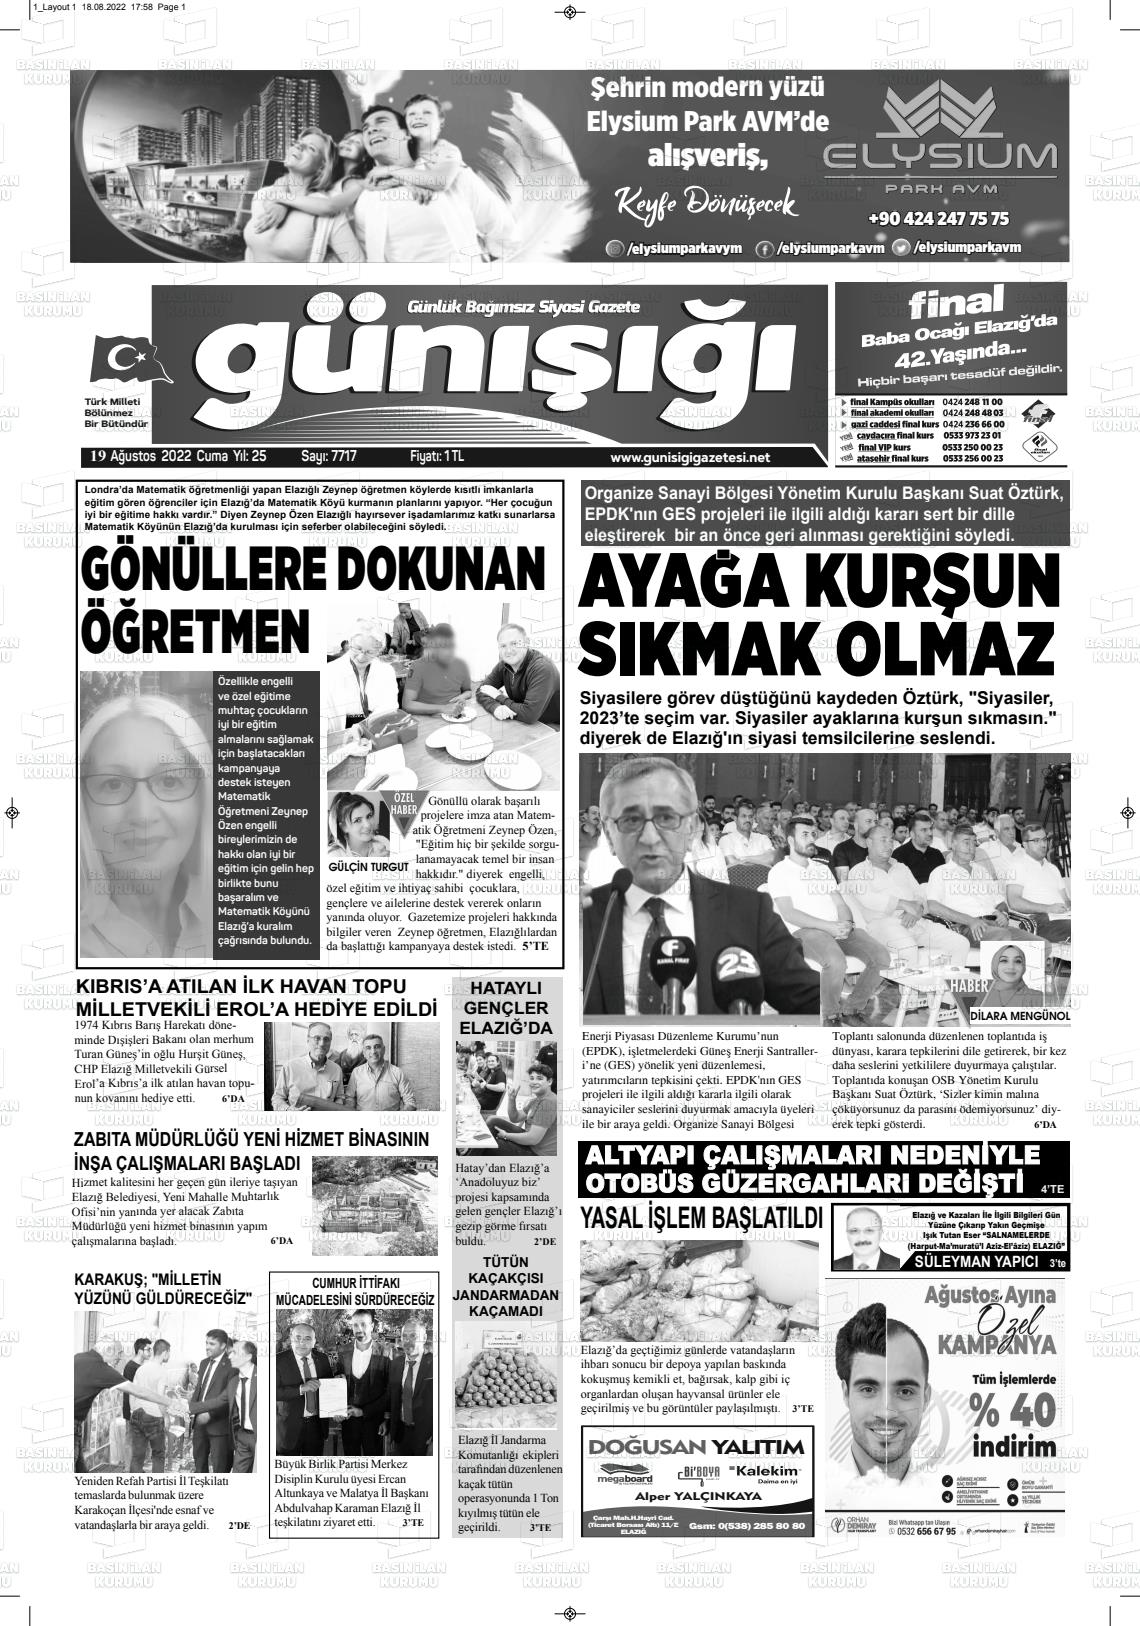 19 Ağustos 2022 Gün Işığı Gazete Manşeti